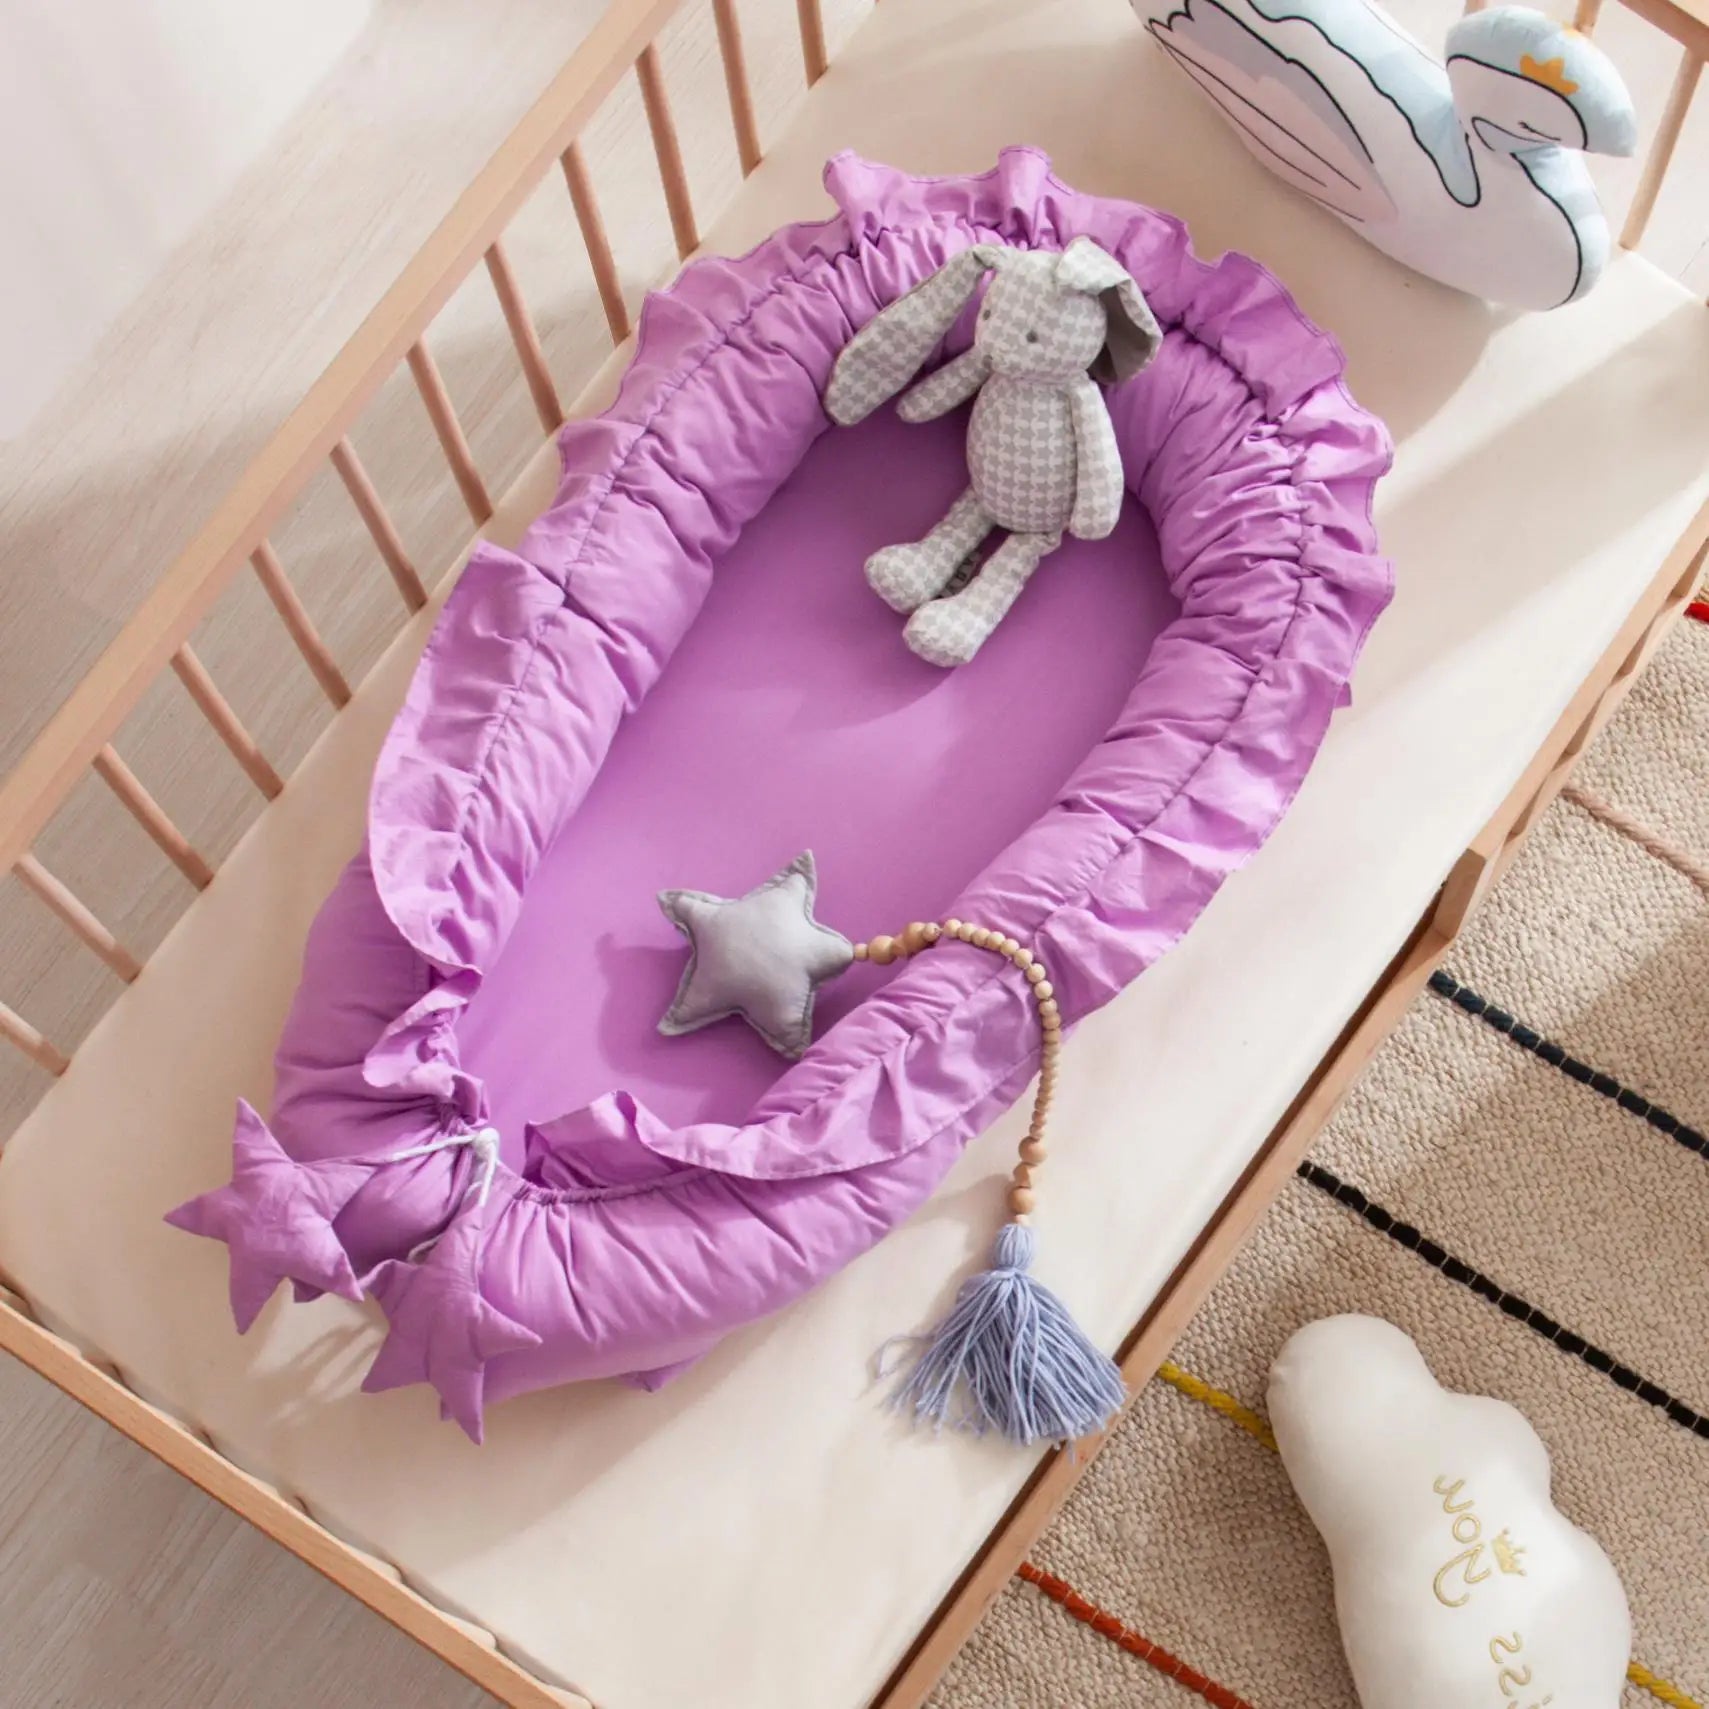 Nid de bébé portable pour les siestes, offrant un espace de repos sécurisé